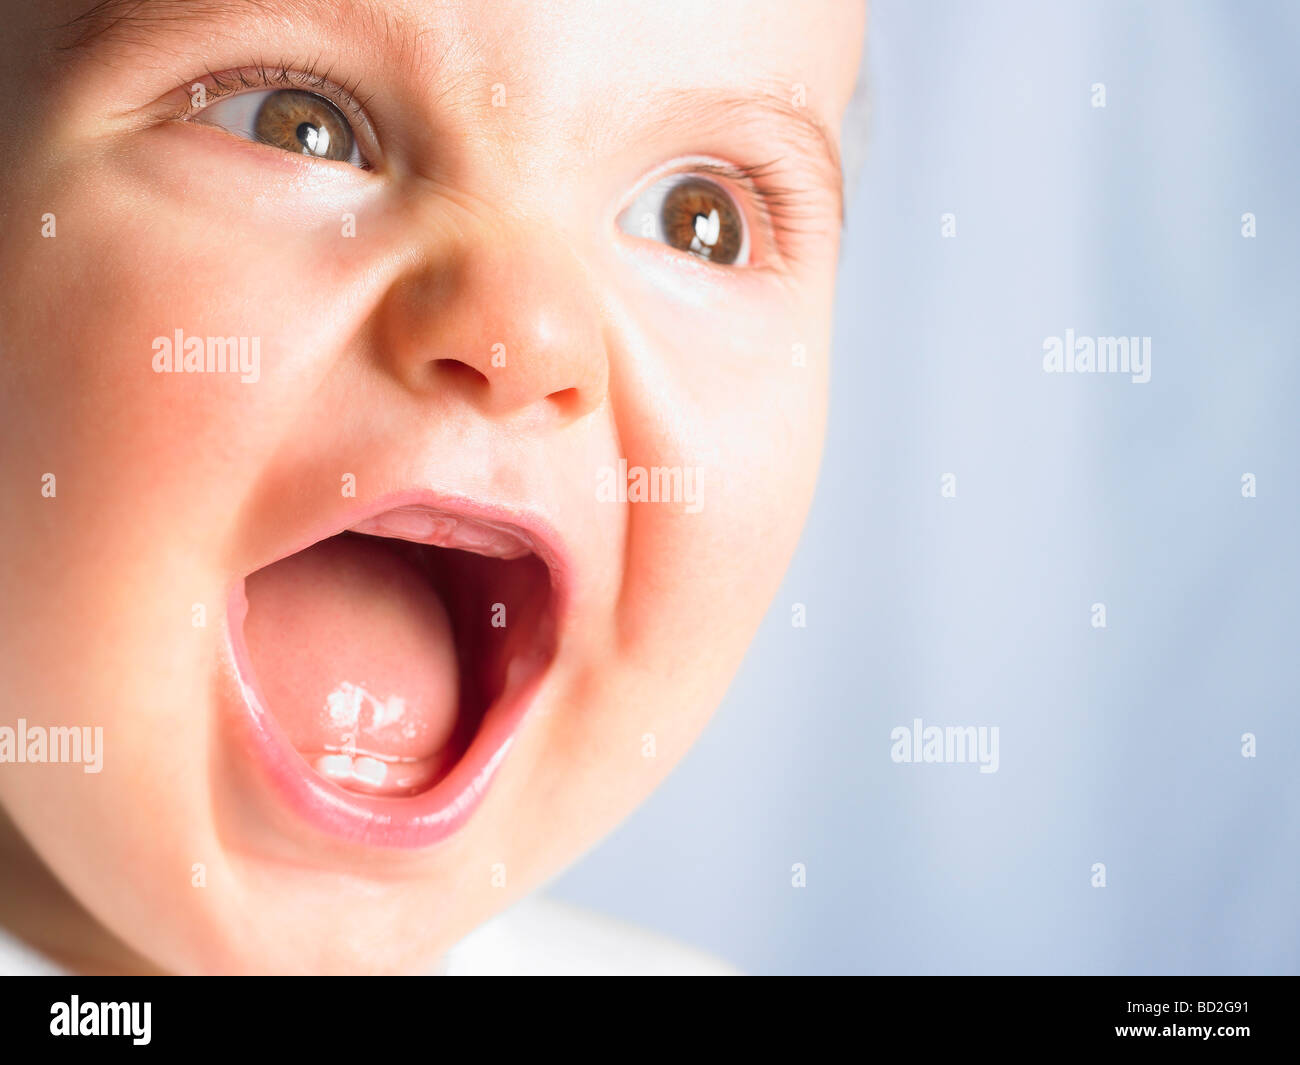 Mãe Ajuda Um Bebê Recém Nascido a Sentar. Criança Gritando Na Sala De Jogos  Em Um Chão De Espuma Mole Foto de Stock - Imagem de gritar, casa: 215291796